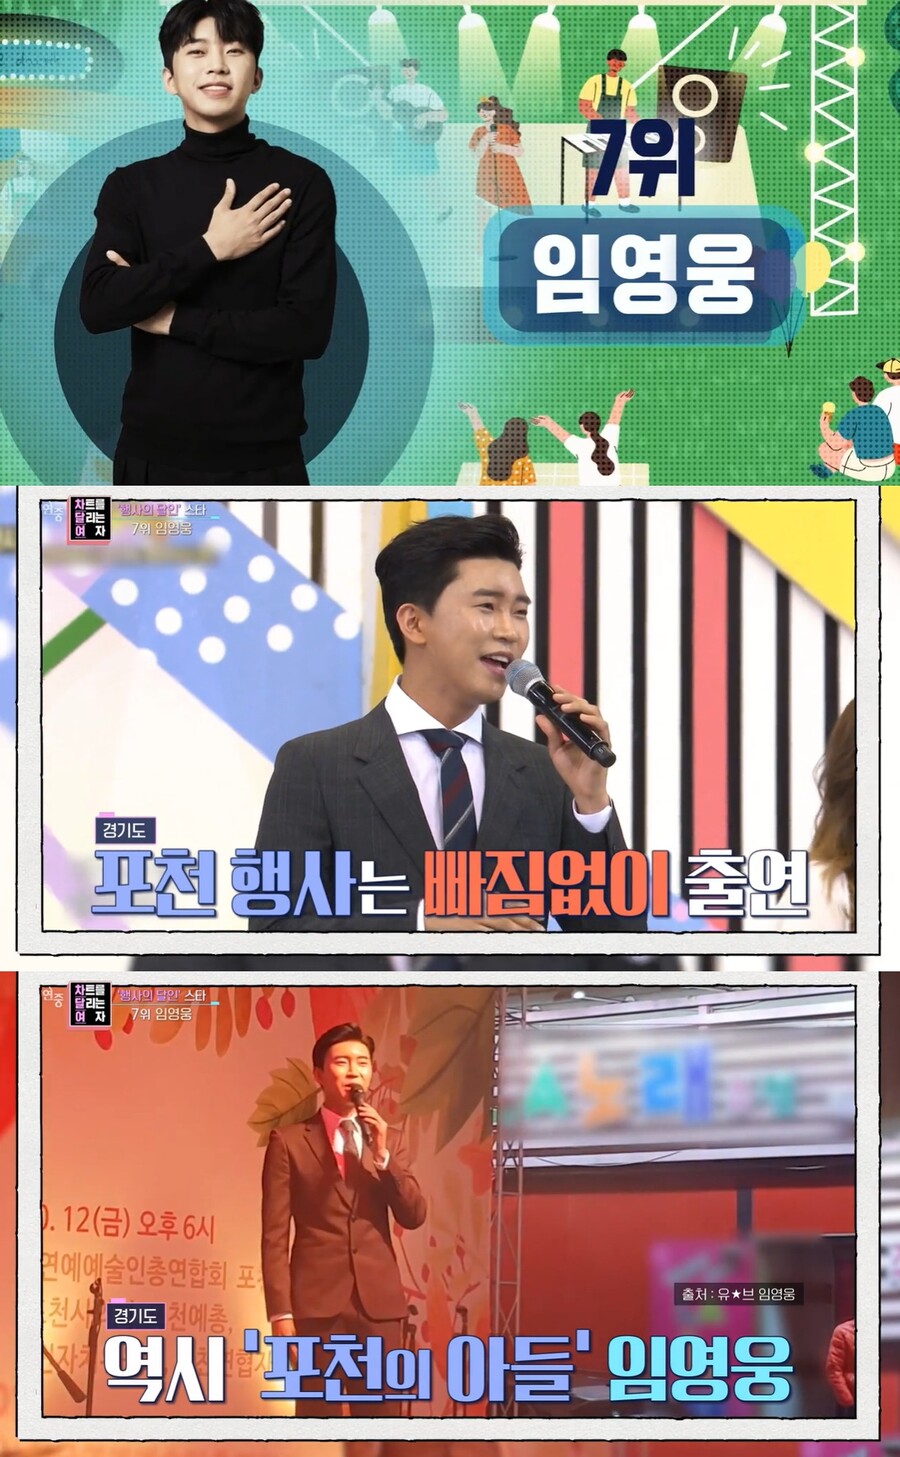 ▲ KBS2 예능 '연중 라이브' 방송 화면. 출처| KBS